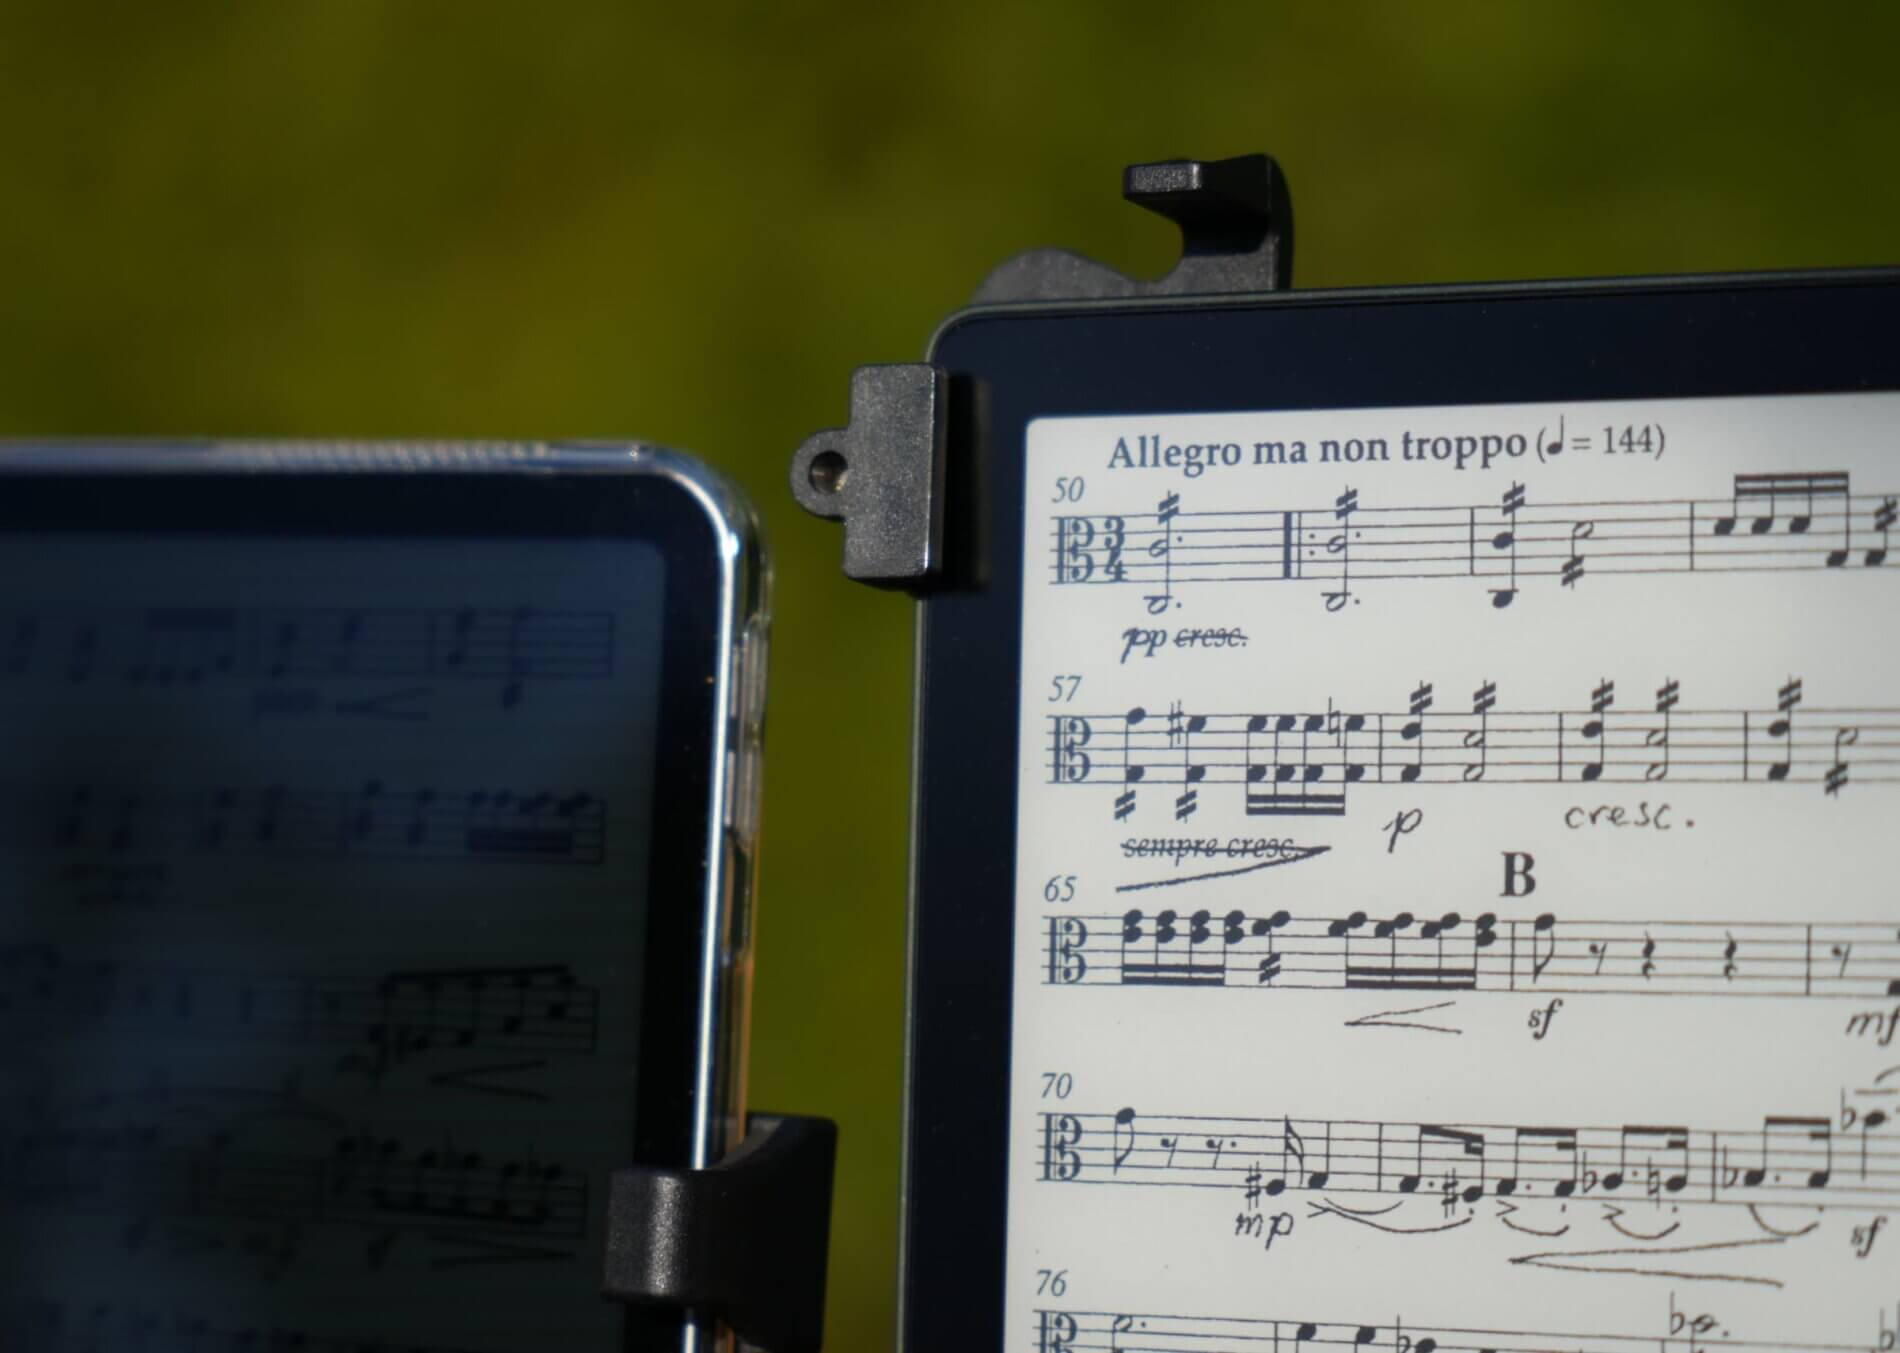 Une liseuse et une tablette (iPad) affichant des partitions de musique en plein soleil